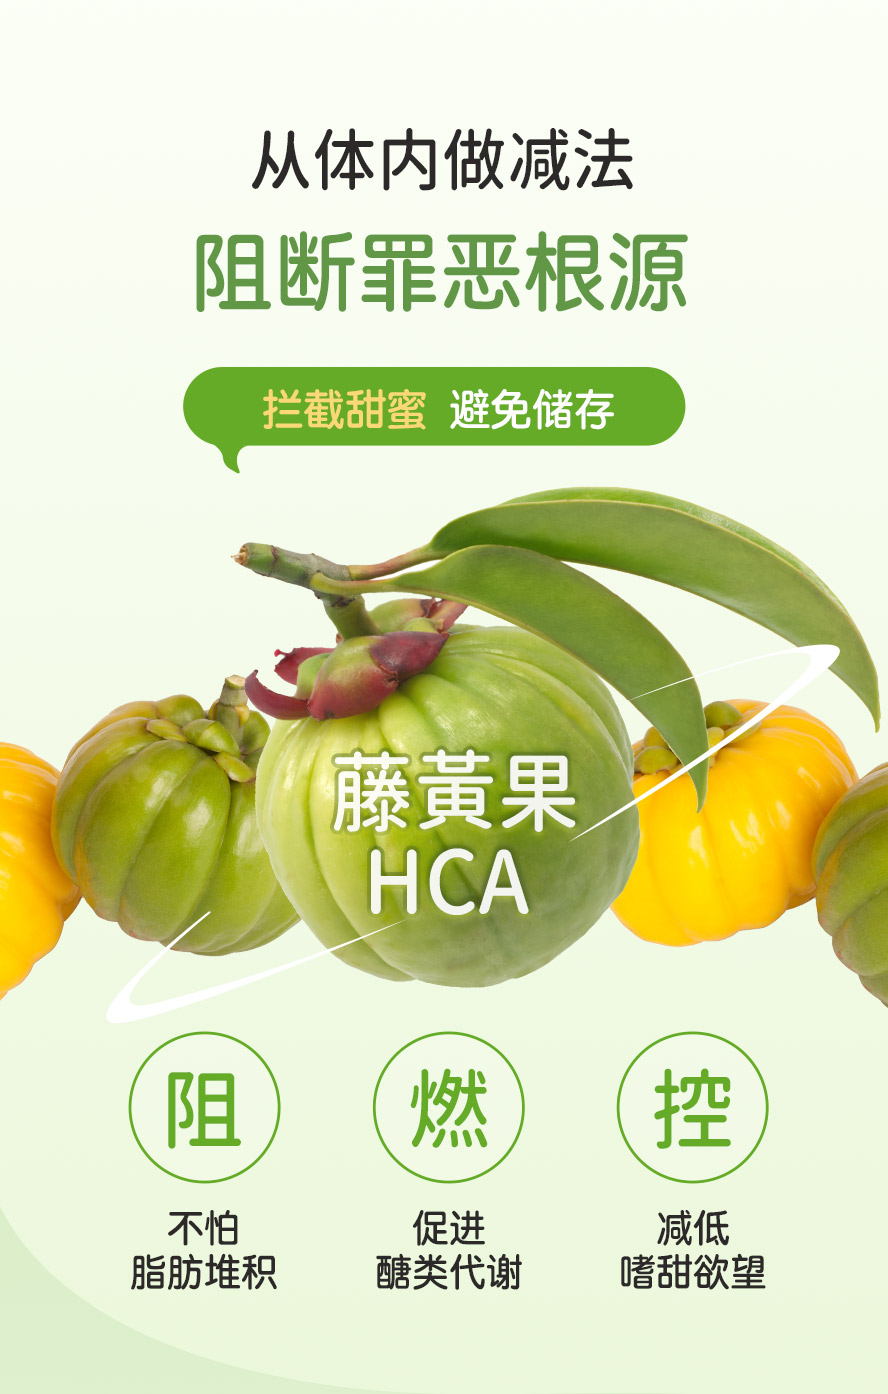 藤黄果的果皮中富含羟基柠檬酸(HCA)，是一种稀有的有机果酸，经证实可降低食欲并阻断脂肪生成。